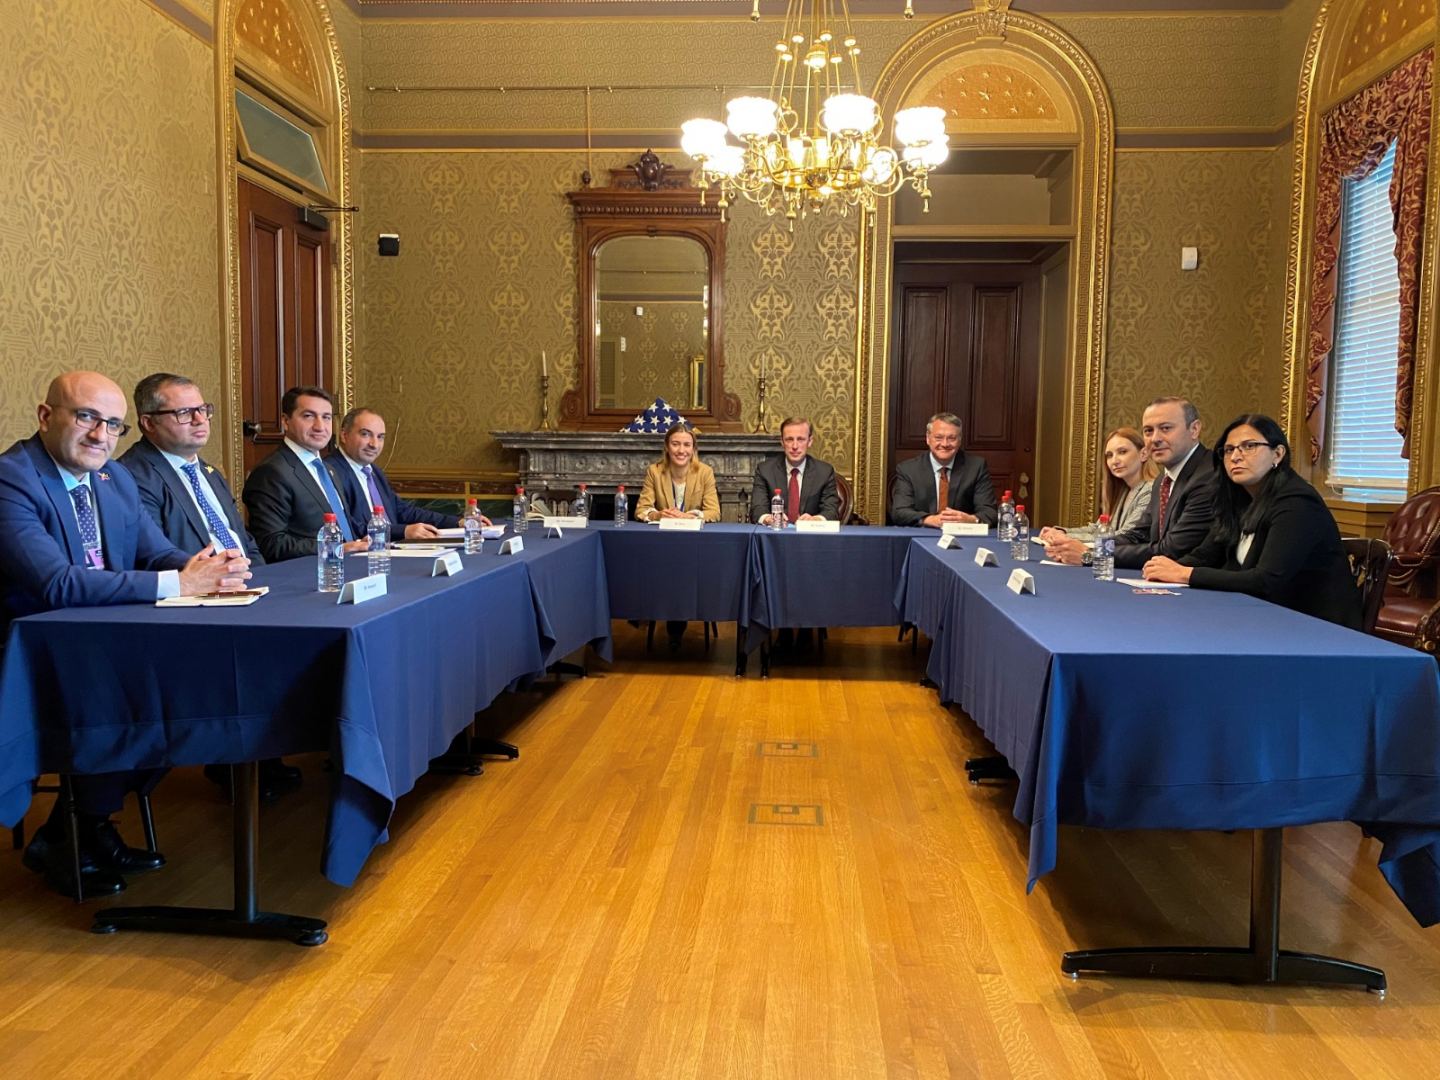 Члены азербайджанской делегации участвовали во встречах высокого уровня в США со значком "Харыбюльбюль" на лацканах пиджаков